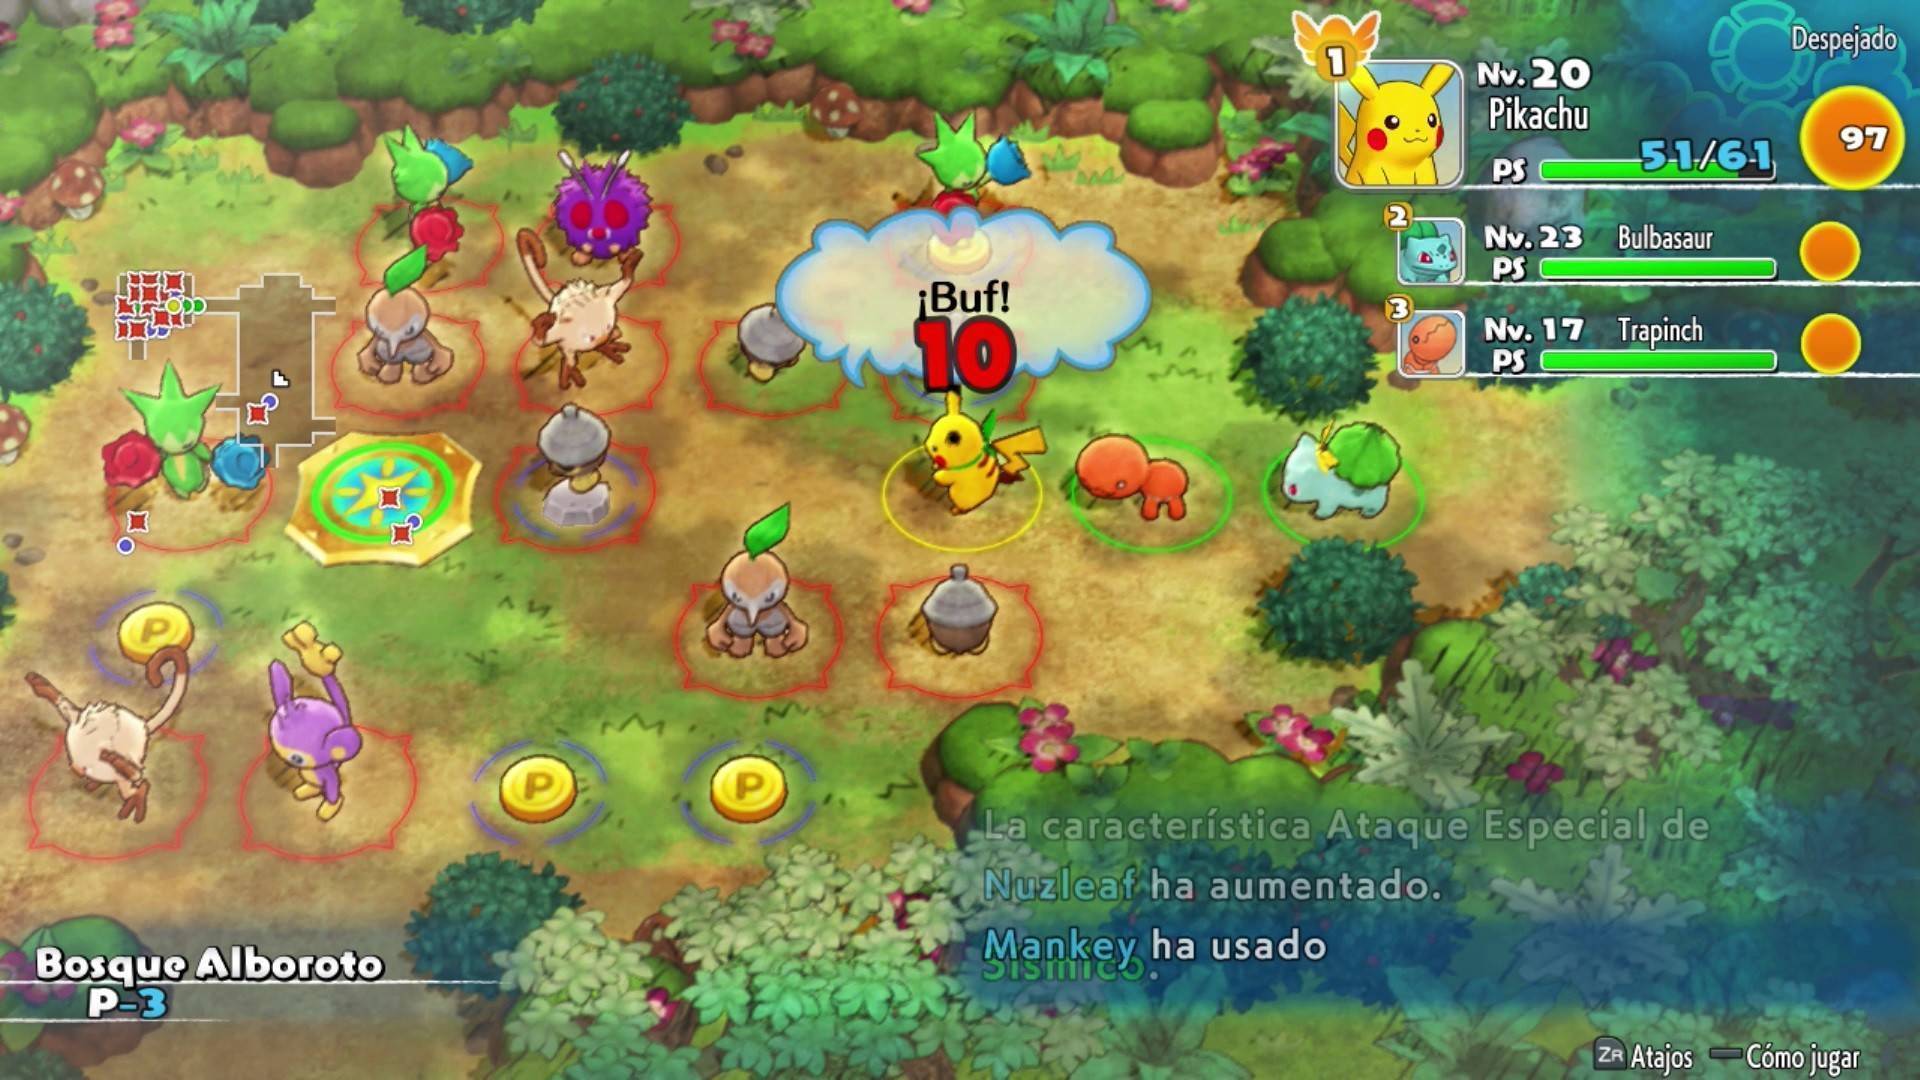 Jogo Nintendo Switch Pokémon Mystery Dungeon: Rescue Team DX